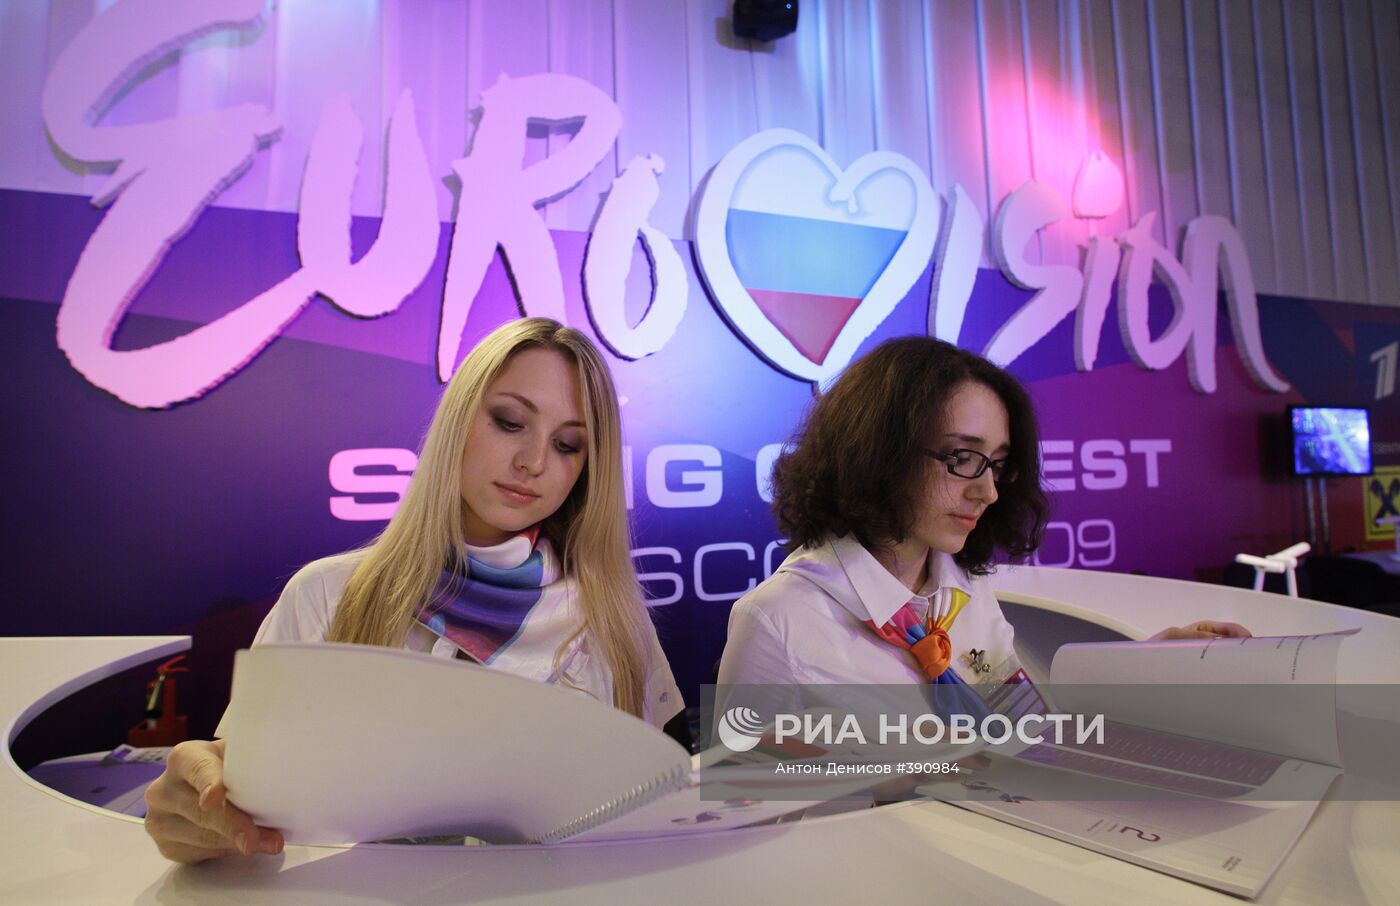 Пресс-центр конкурса "Евровидение-2009" в Москве